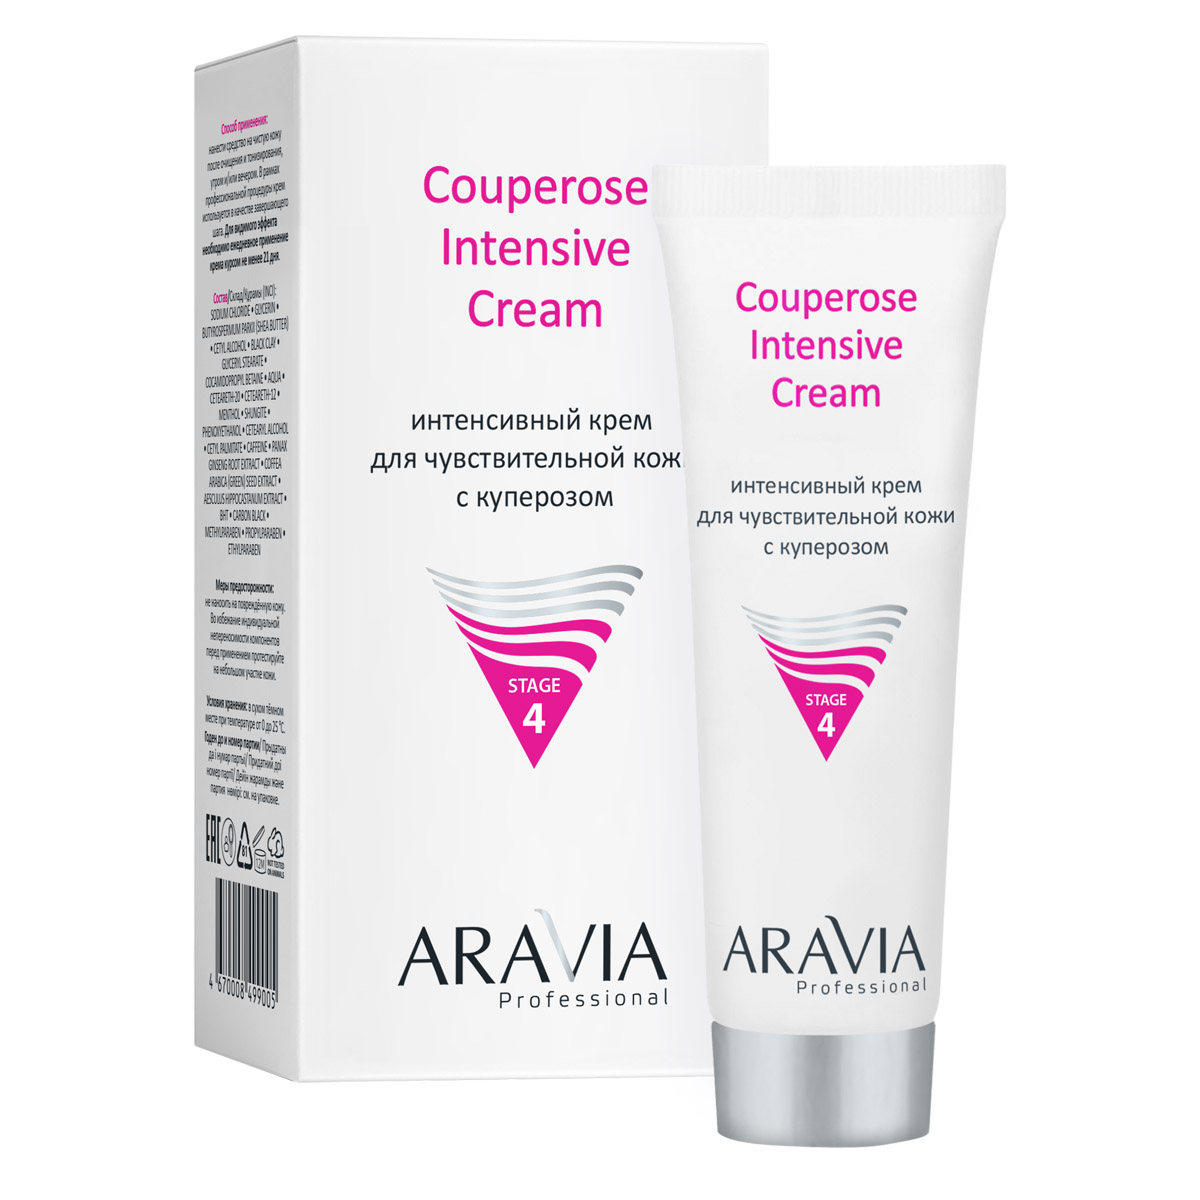 Aravia Professional Интенсивный крем для чувствительной кожи с куперозом Couperose Intensive Cream, 50 мл (Aravia Professional, Уход за лицом)